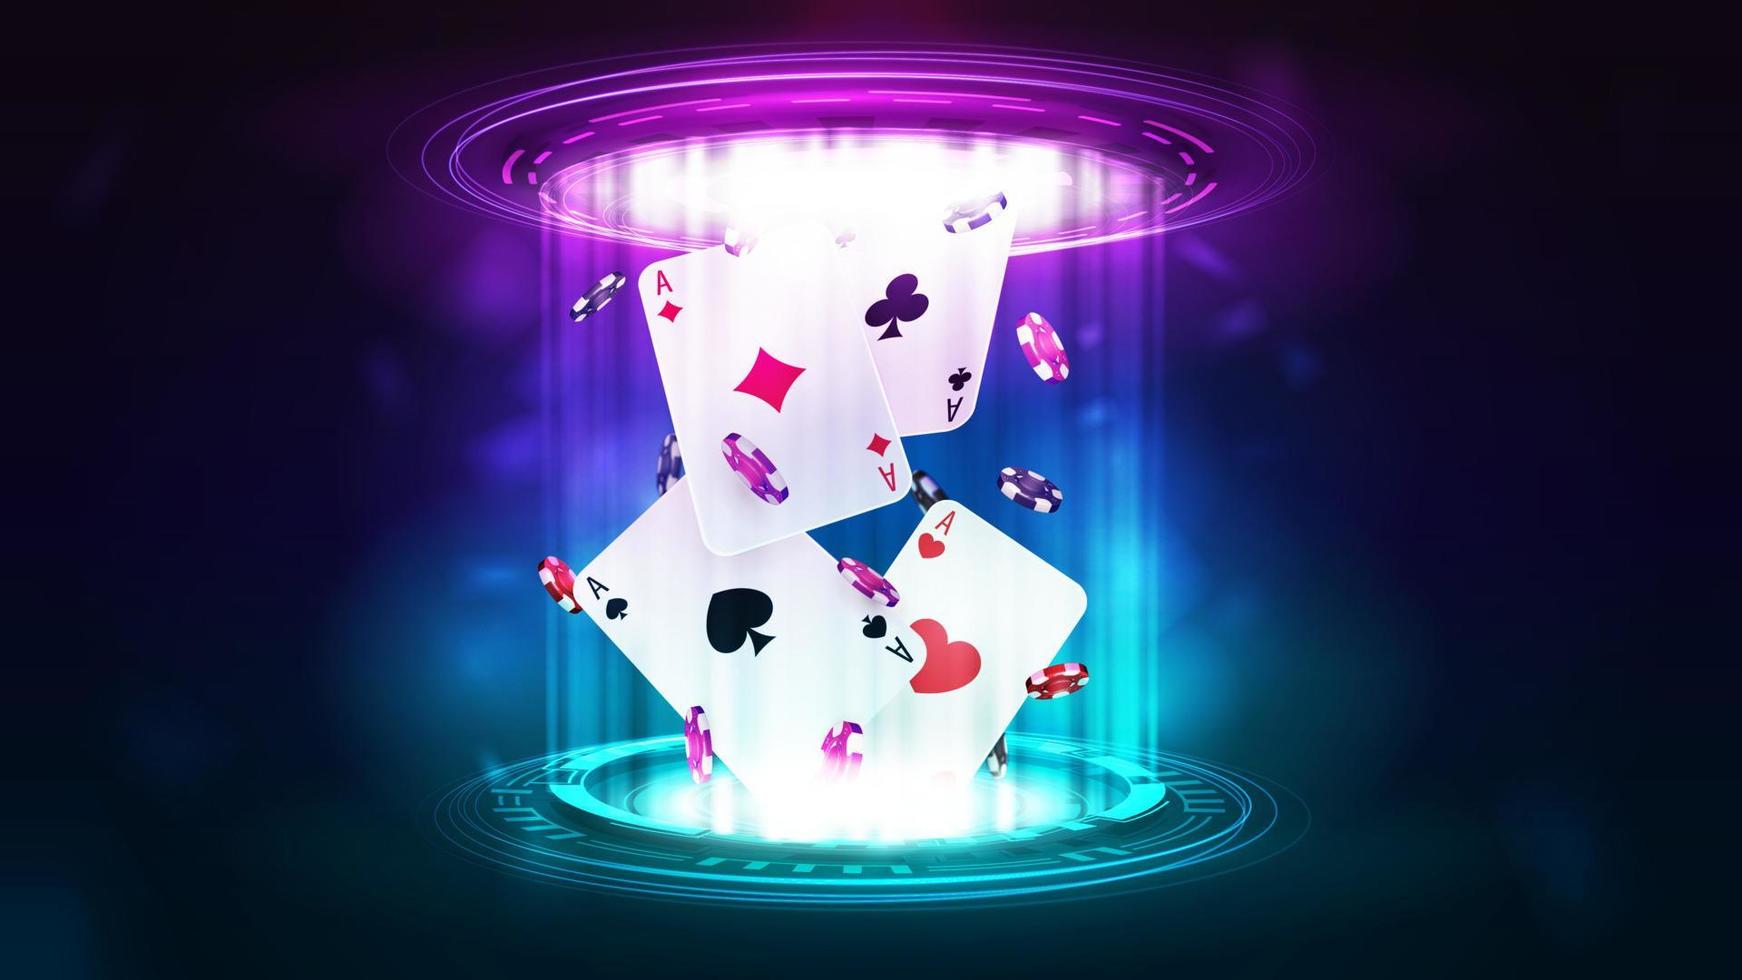 kasinospelkort med pokermarker inuti rosa och blå hologram av digitala ringar i mörk tom scen vektor